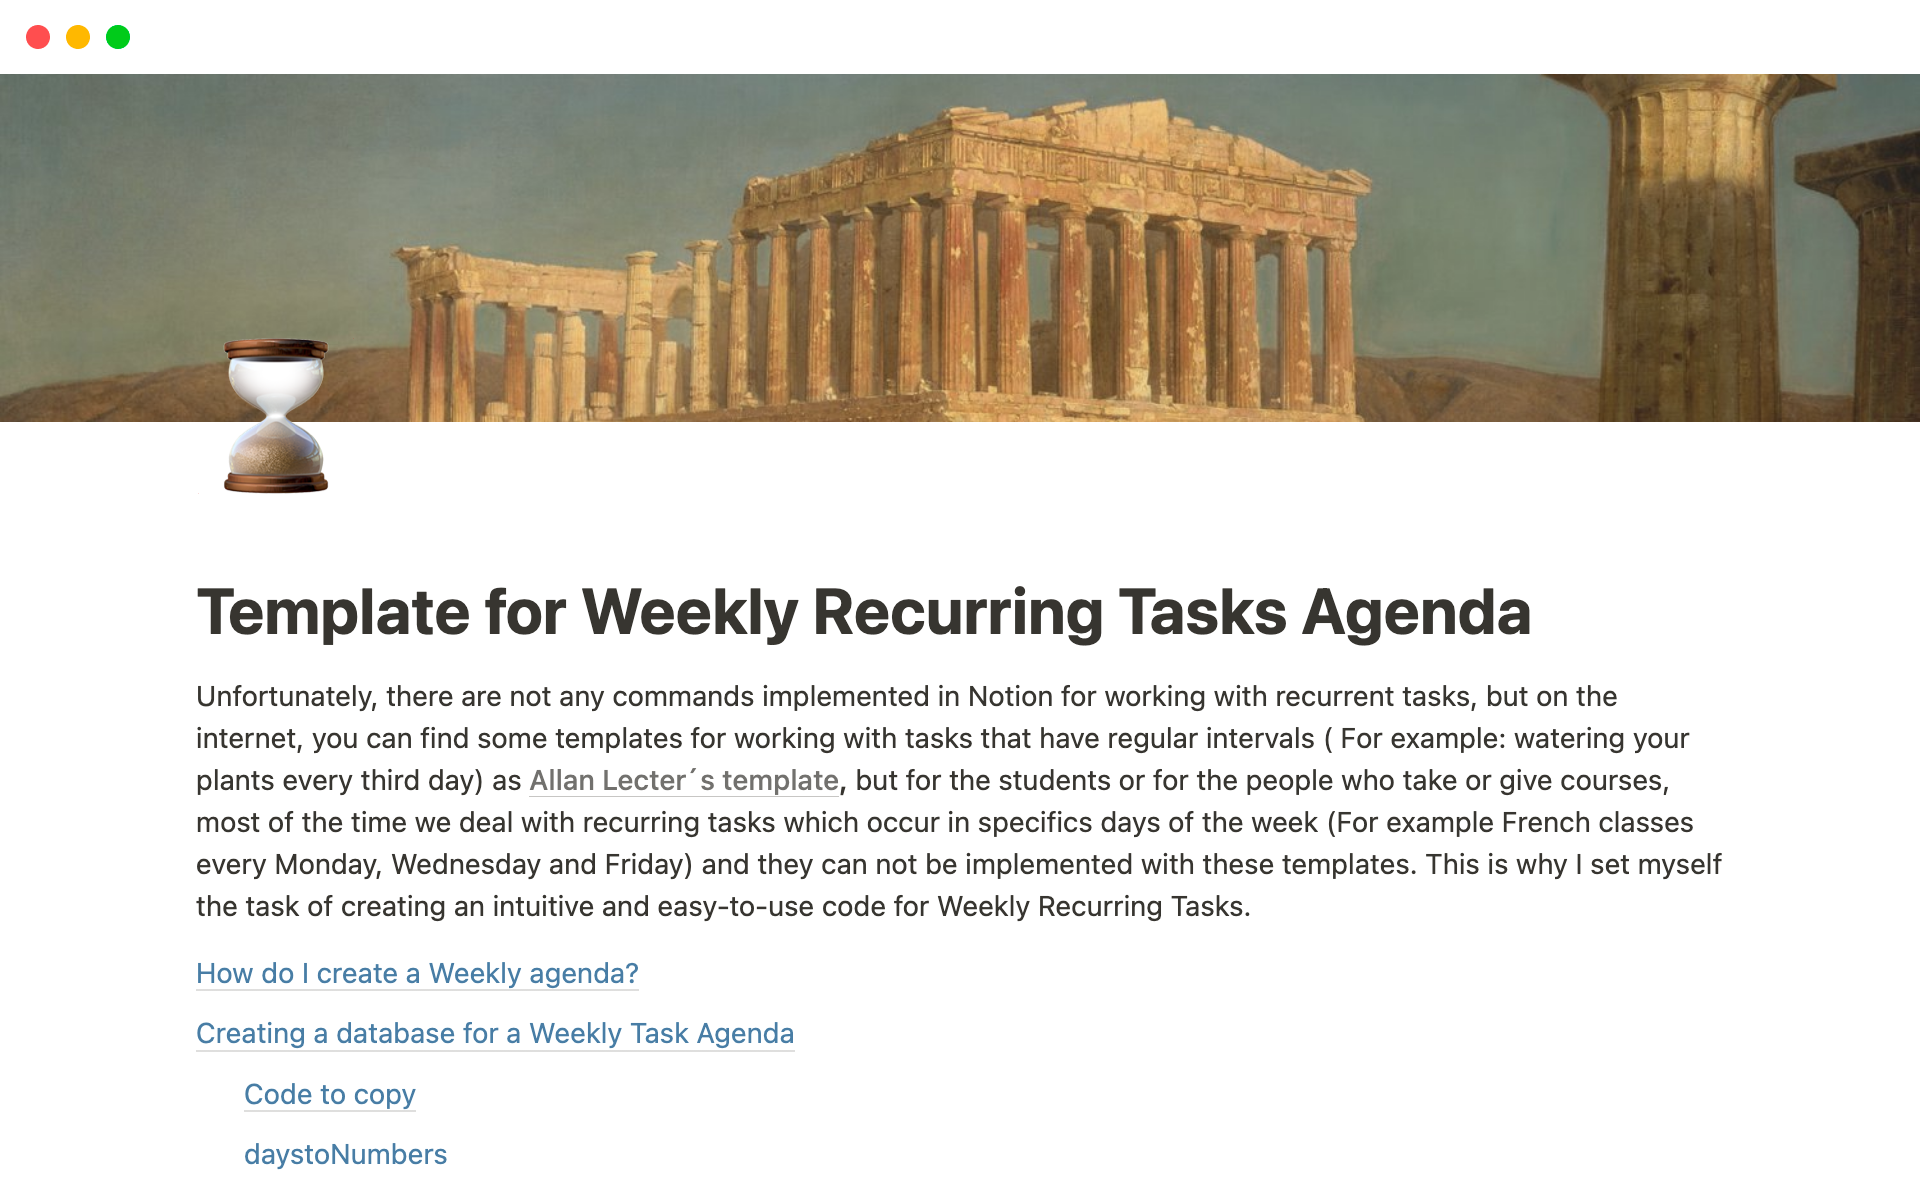 Uma prévia do modelo para Weekly Recurring Tasks Agenda